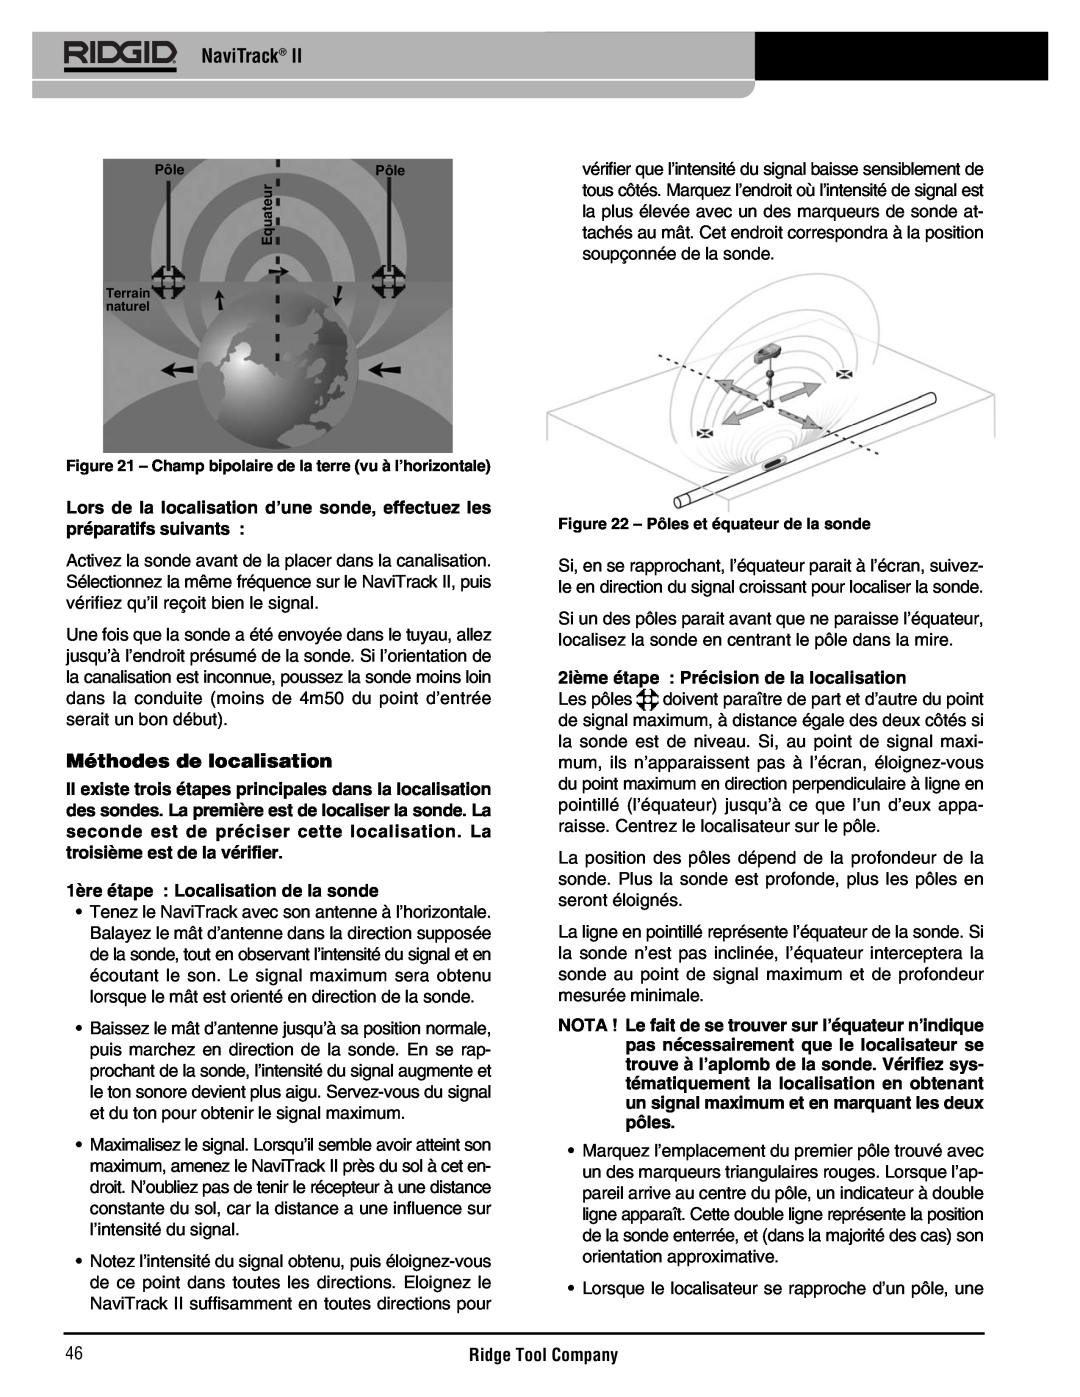 RIDGID Metal Detector manual Méthodes de localisation, 1ère étape Localisation de la sonde, NaviTrack 